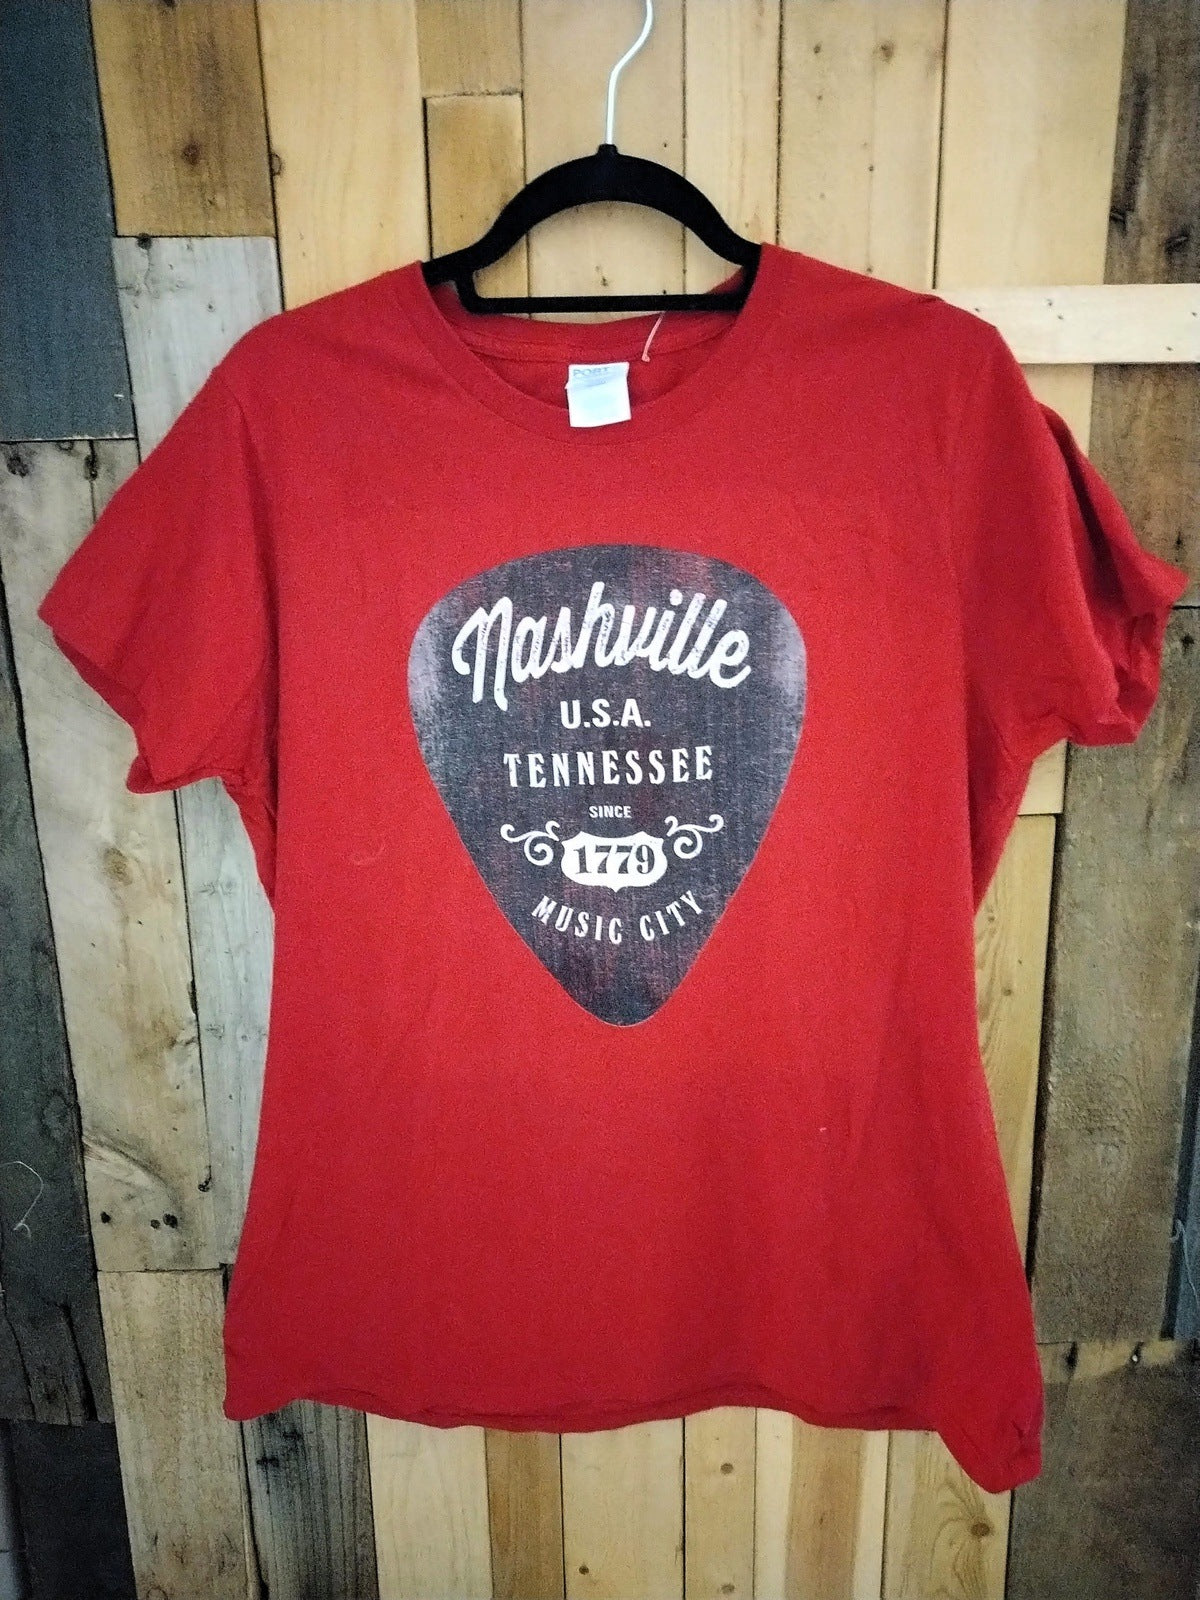 Nashville "Since 1779" Women's T Shirt Size Large